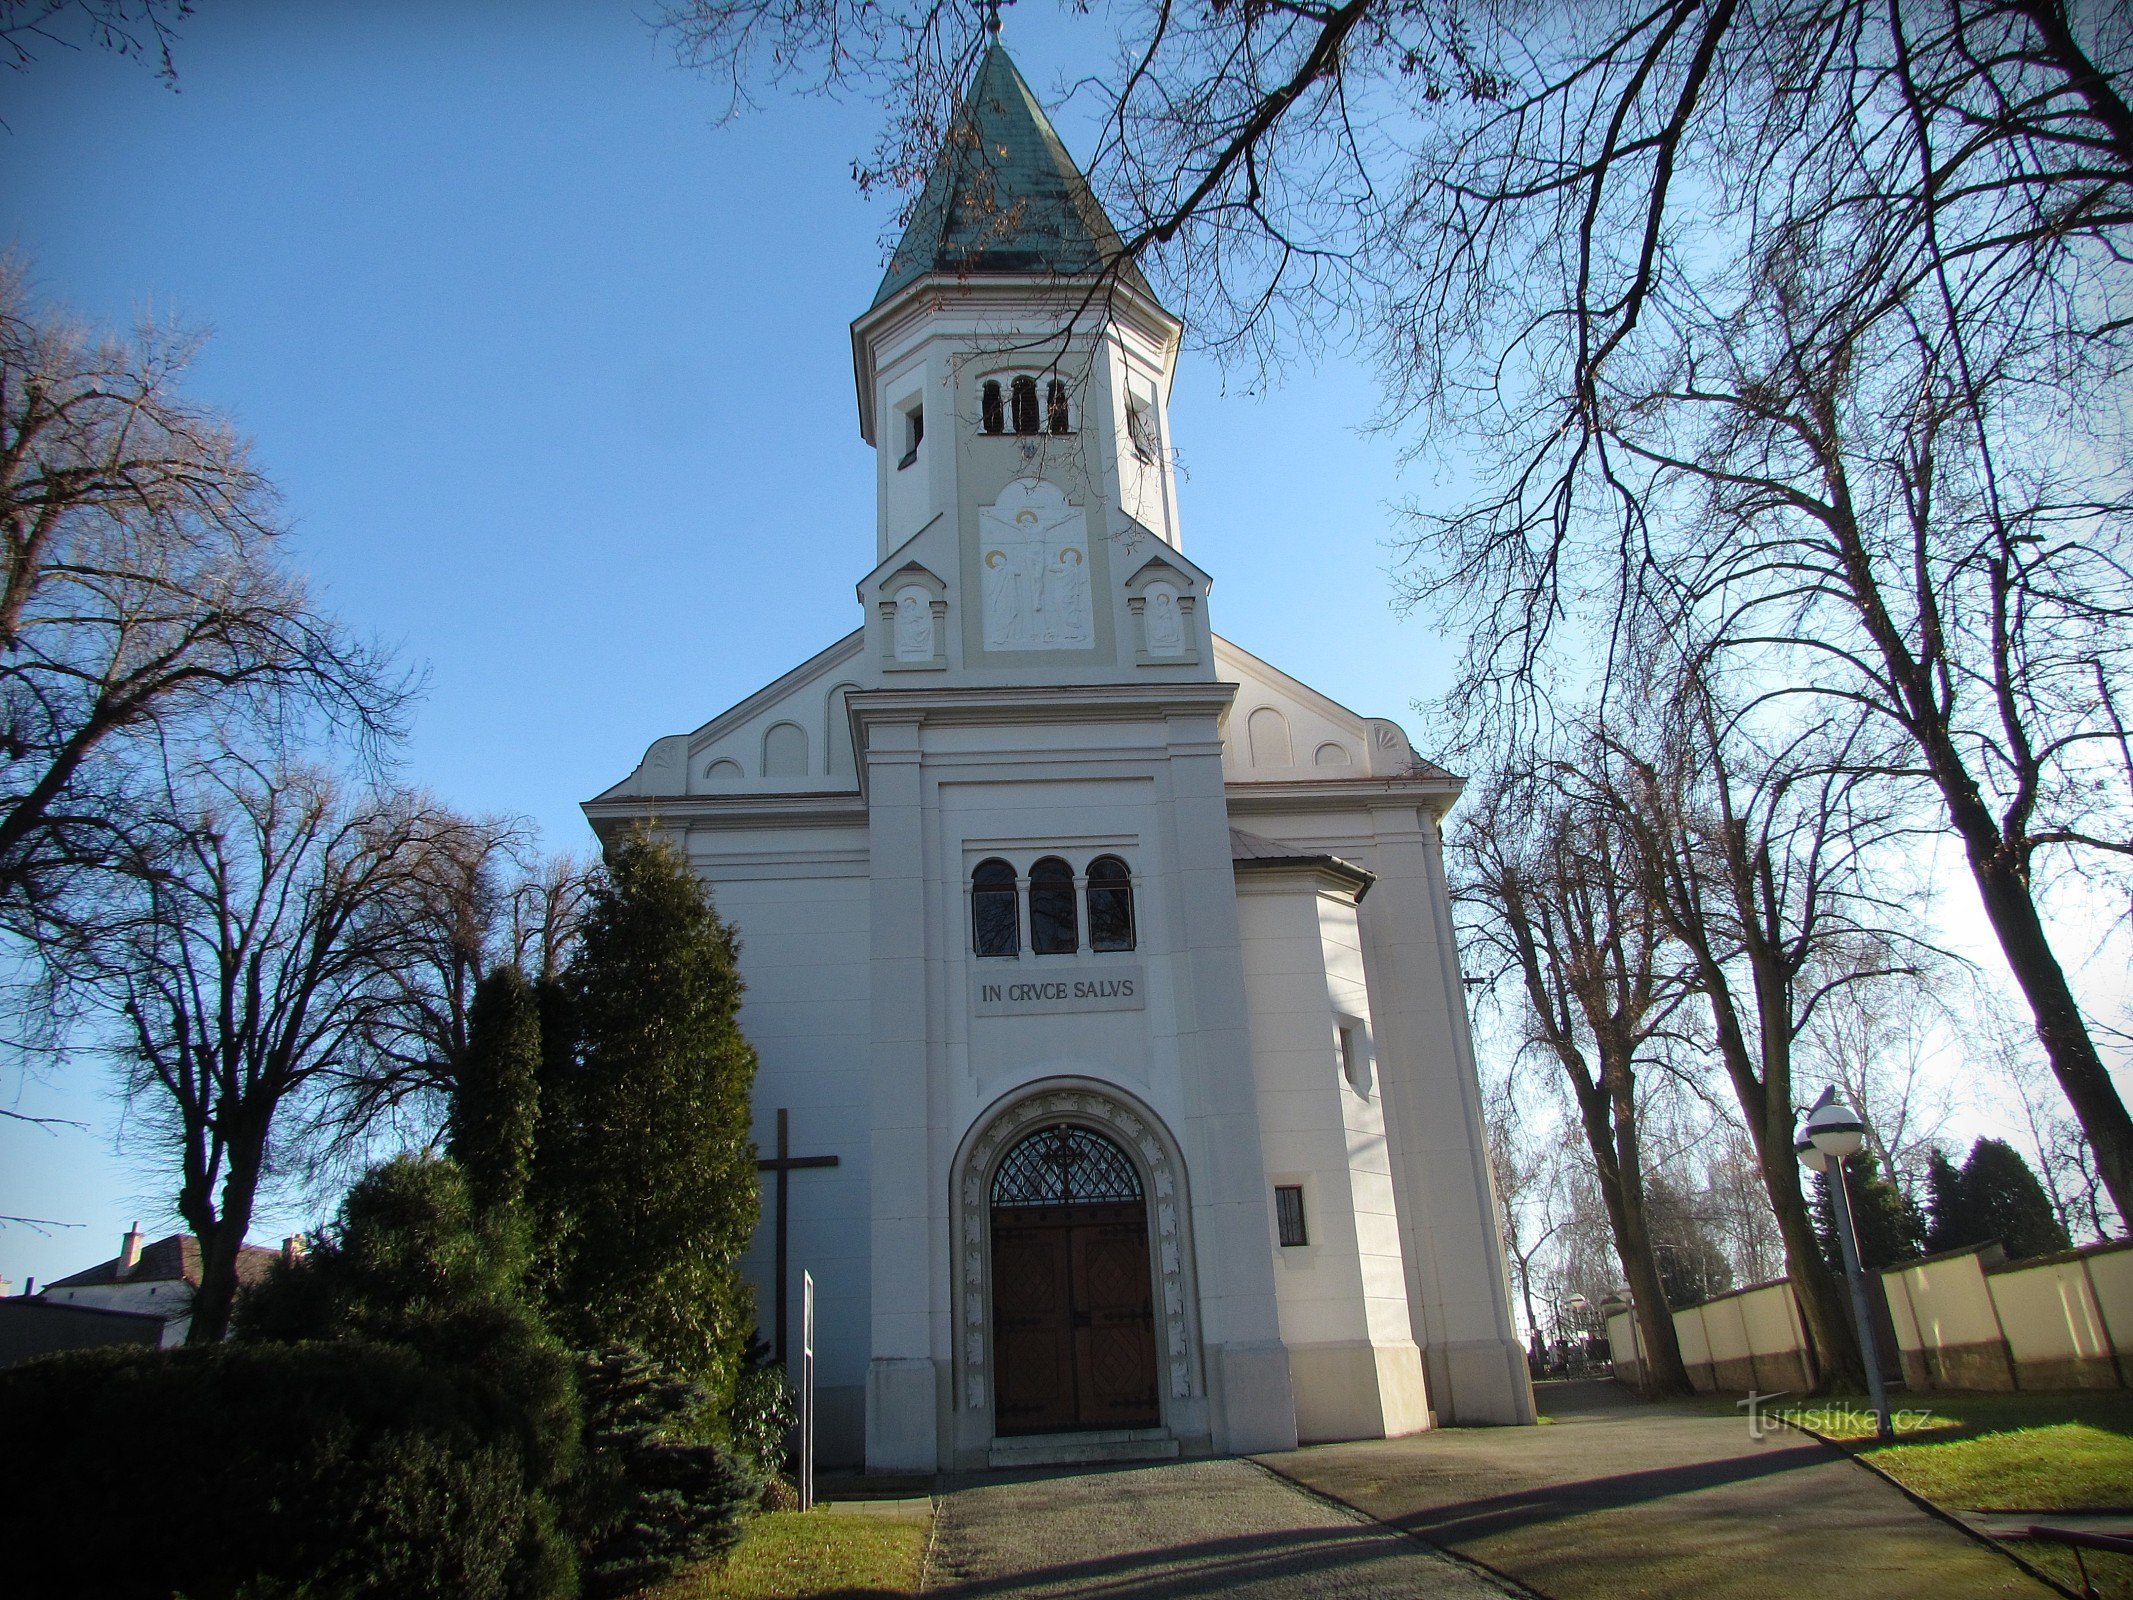 Žeranovice - Szent Lőrinc templom